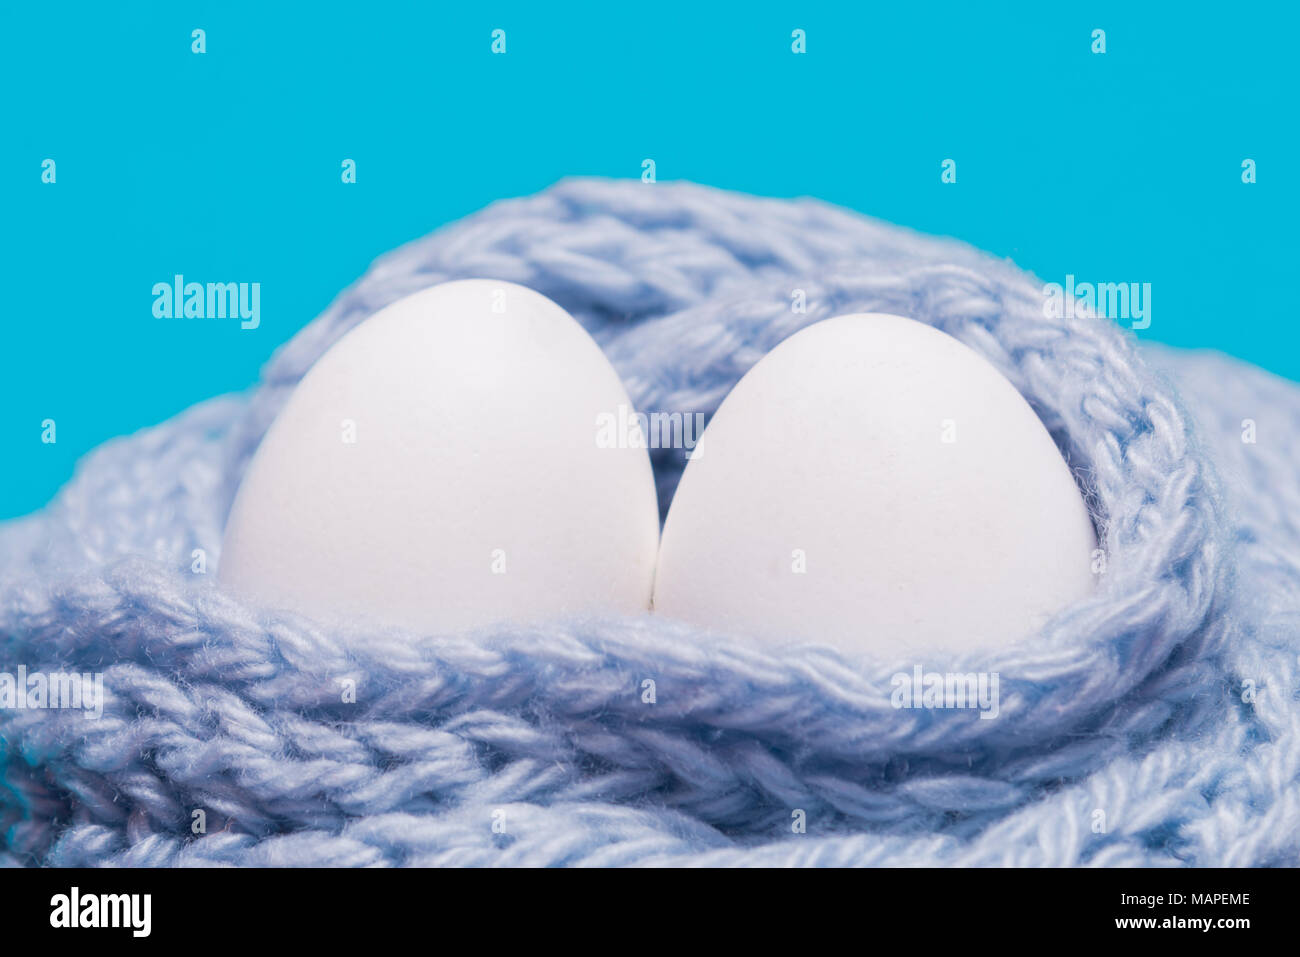 Zwei weiße Eier in einen gestrickten Schal gewickelt Stockfoto